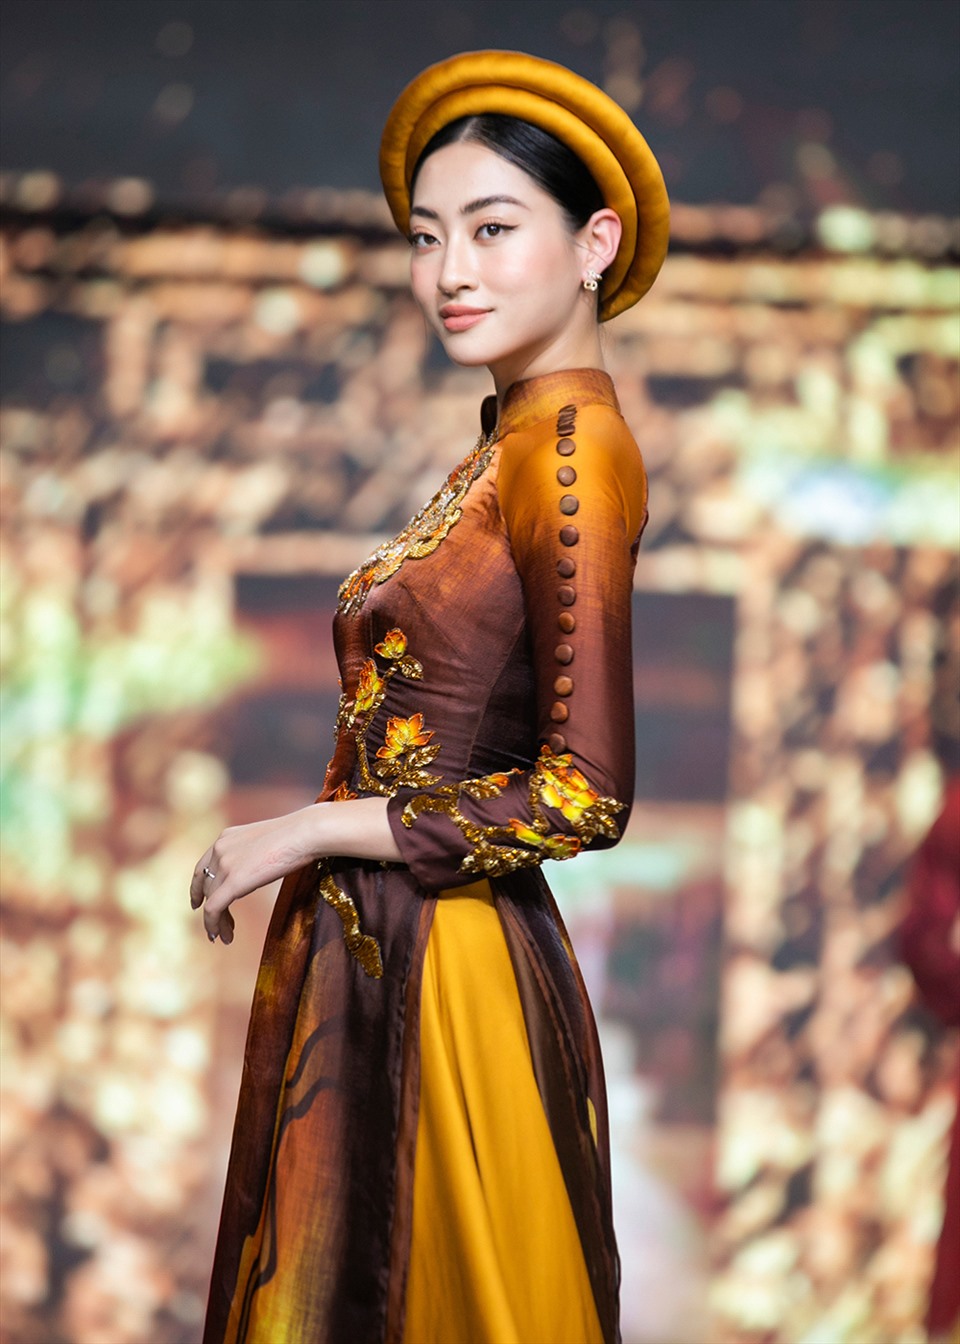 Trong chương trình nghệ thuật Chào xuân mới, Lương Thùy Linh diện áo dài tông nâu và vàng, thêu nổi. Sau khi đoạt danh hiệu Hoa hậu Thế giới Việt Nam 2019, cô lấn sân nghề mẫu, được nhiều nhà thiết kế chọn trình diễn.